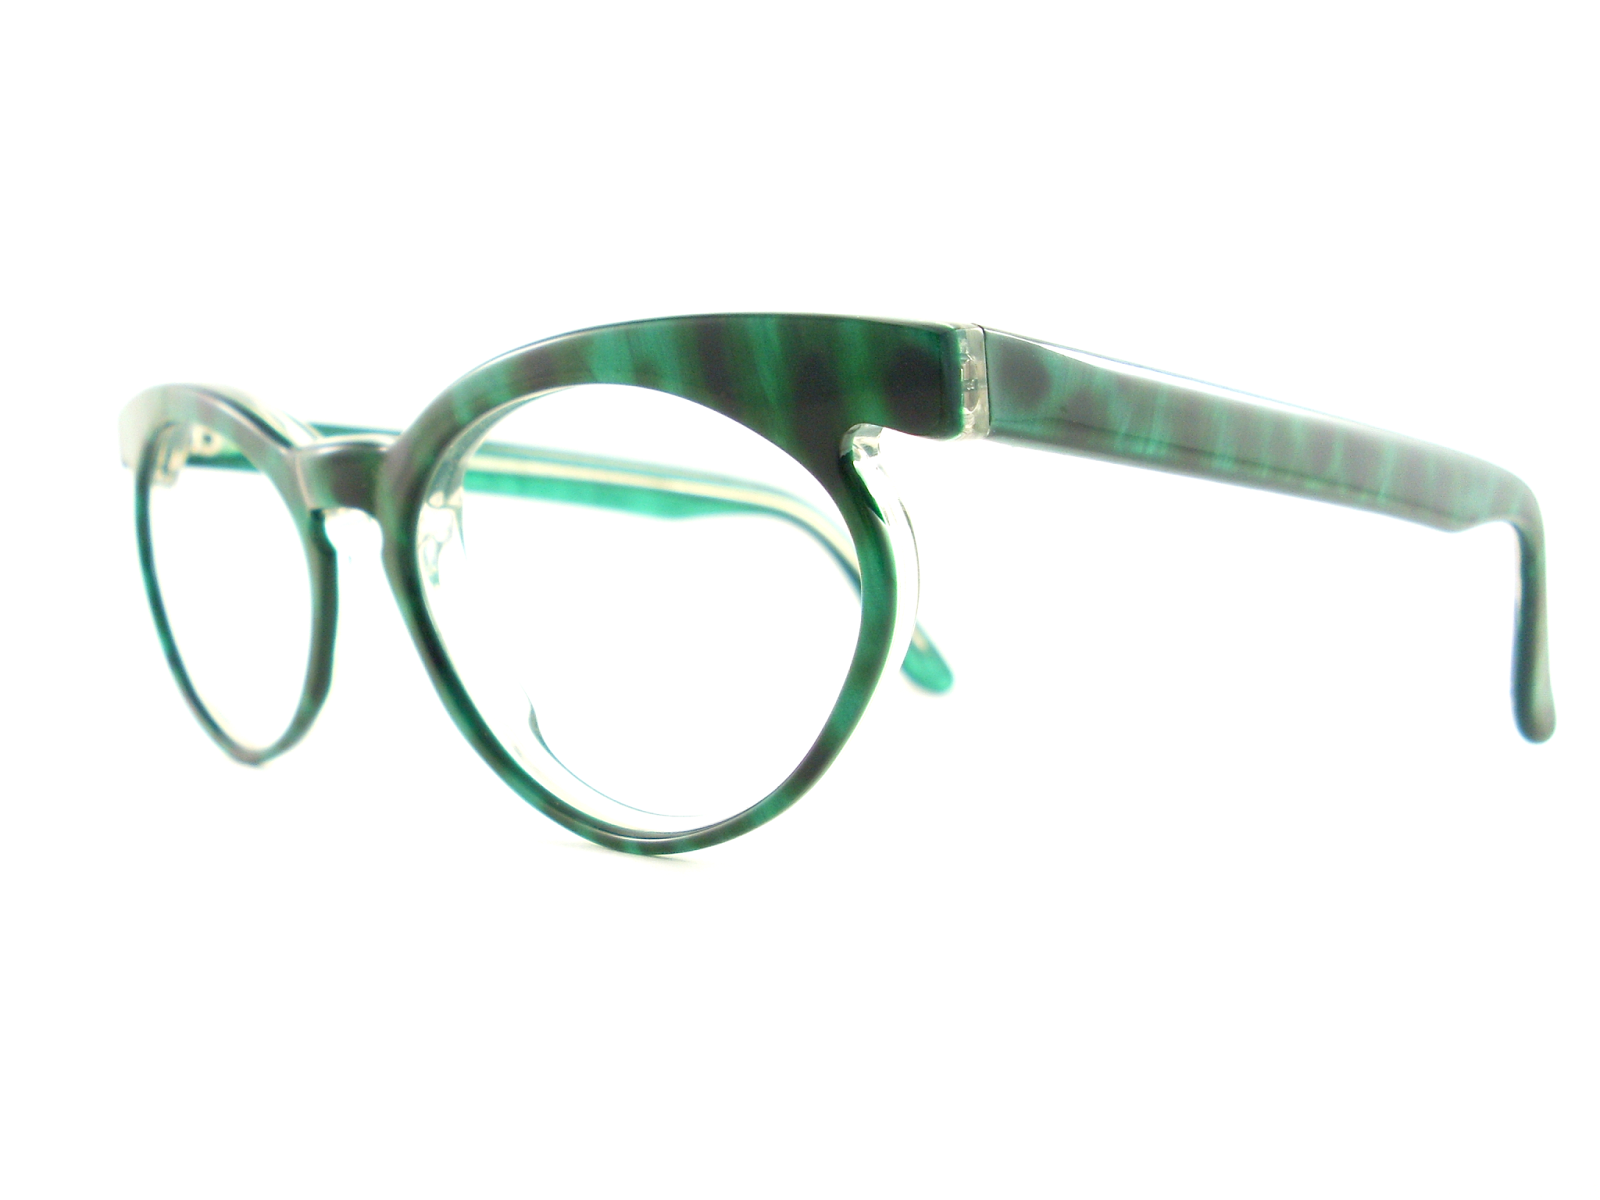 Vintage Eyeglasses Frames Eyewear Sunglasses 50s Vintage Green Cat Eye 